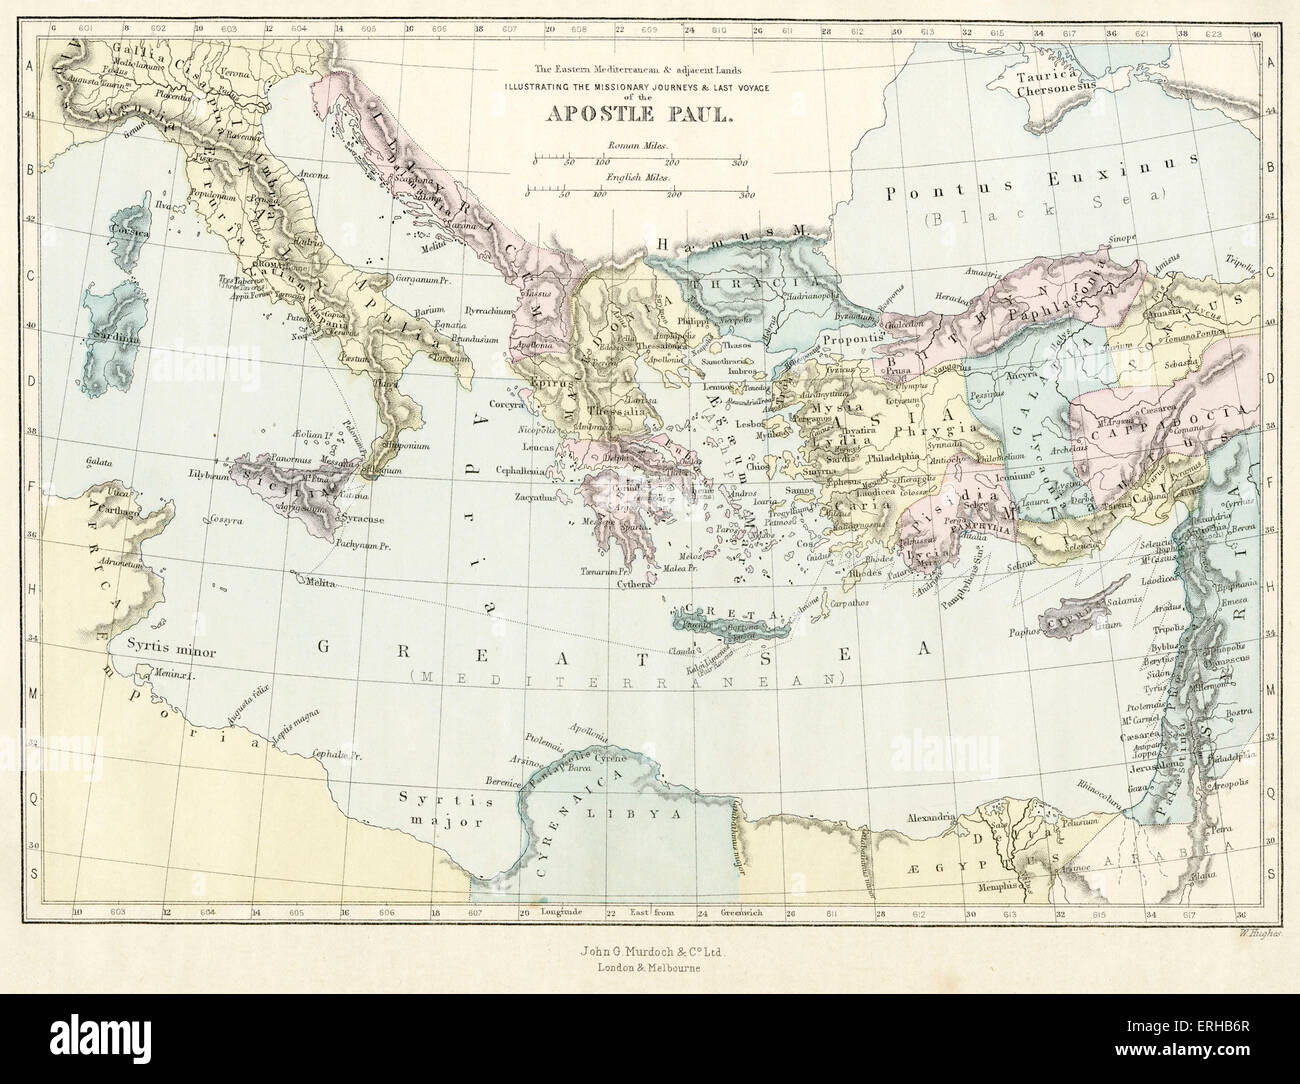 Xix secolo mappa raffigurante i viaggi missionari e ultimo viaggio dell Apostolo Paolo attraverso il Mediterraneo. Illustrazione di Philip Morris R (1836-1902). Foto Stock